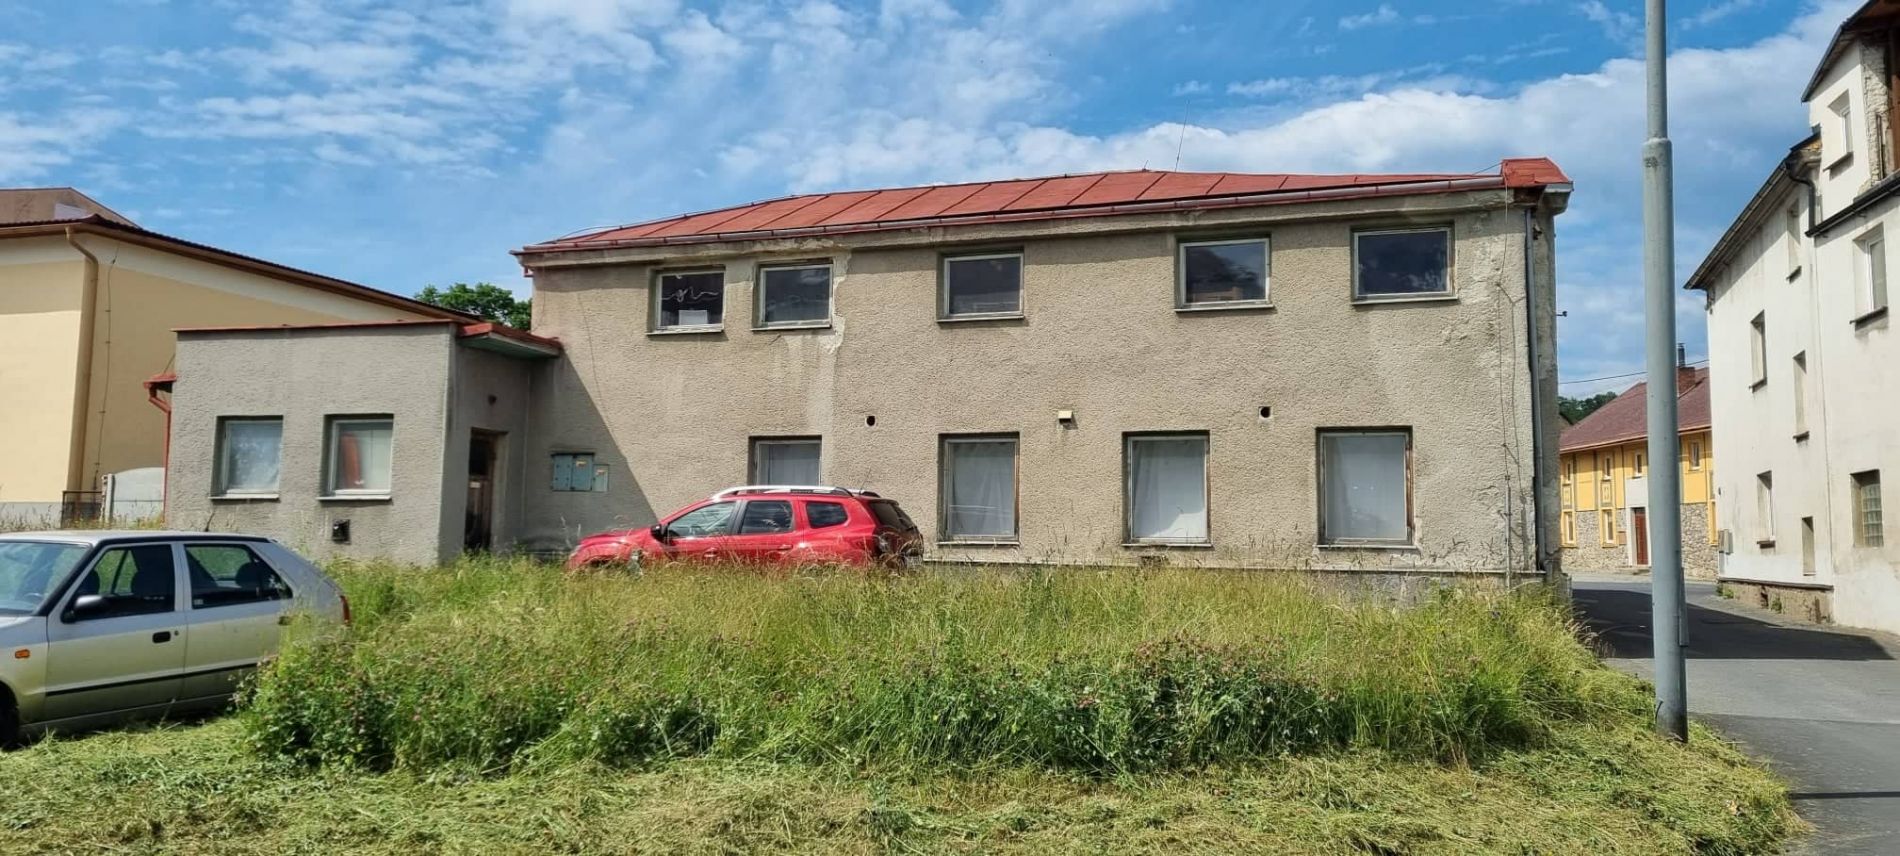 Prodej domu ( stavby občanského vybavení) na ul. Jánošíkova v Javorníku, obrázek č. 3